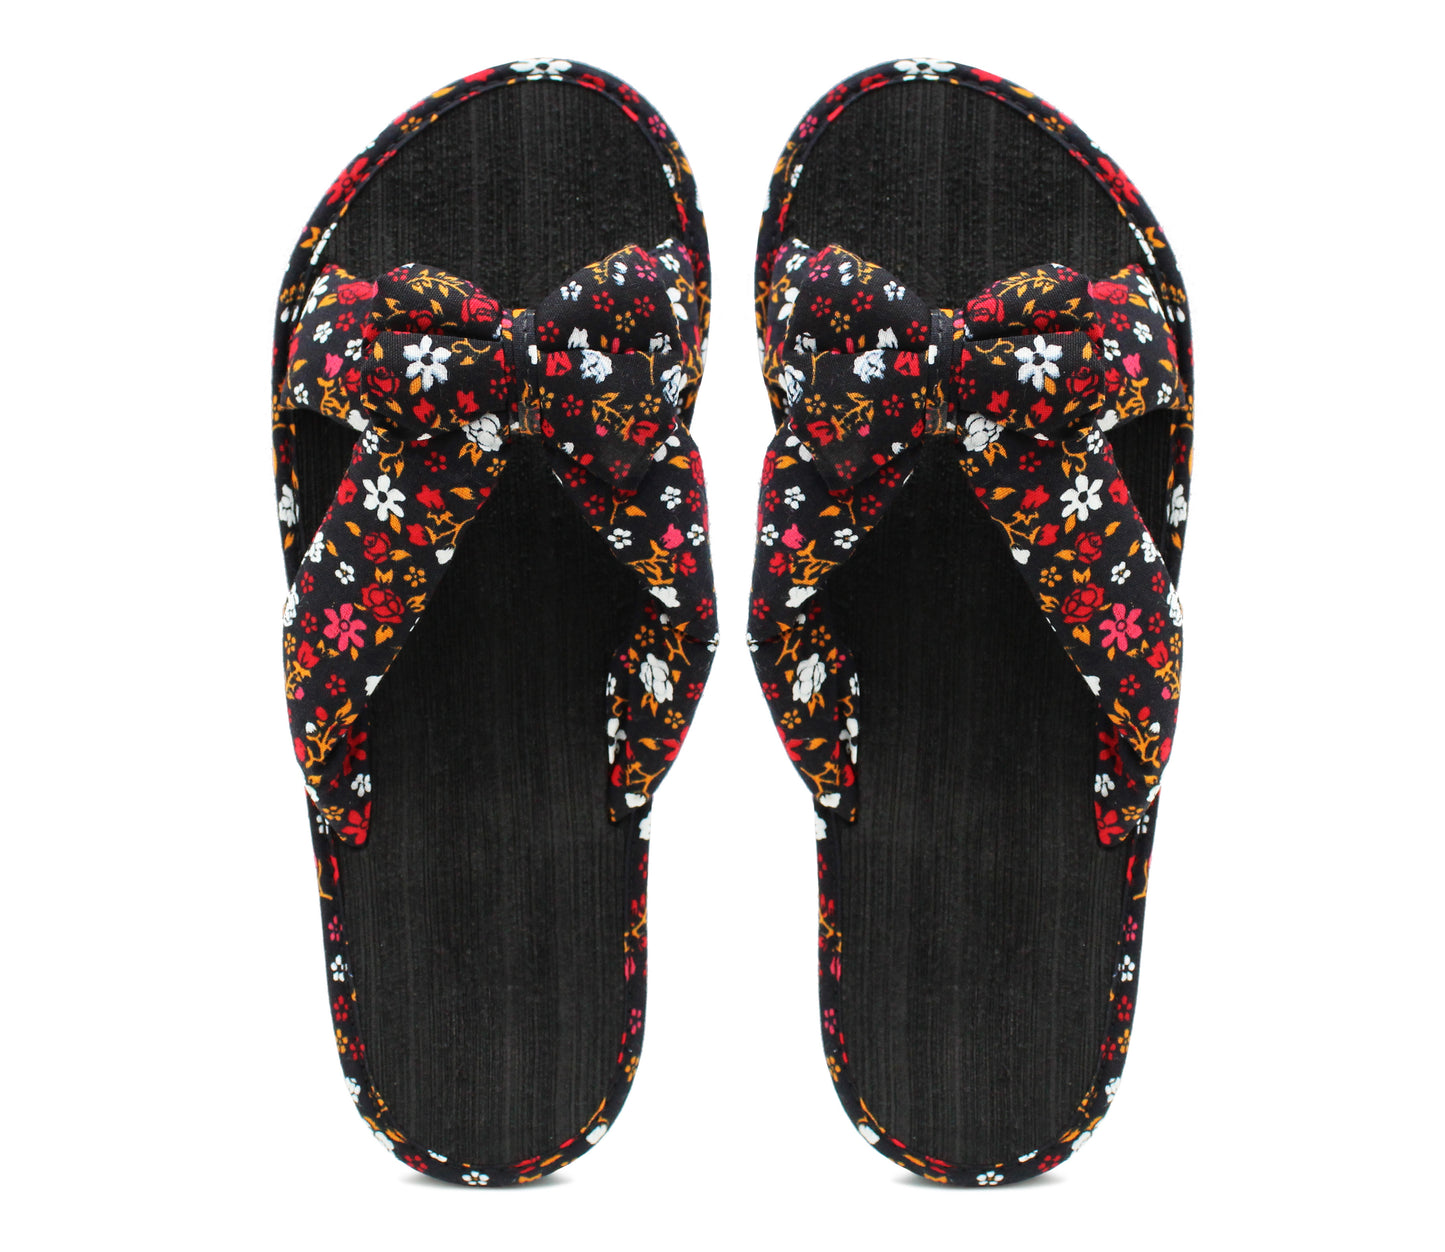 Womens Lightweight Floral Mule Sandals Slip On Sliders Summer Beach Flip Flops Ladies Flat Spa Pool Slides Black Red